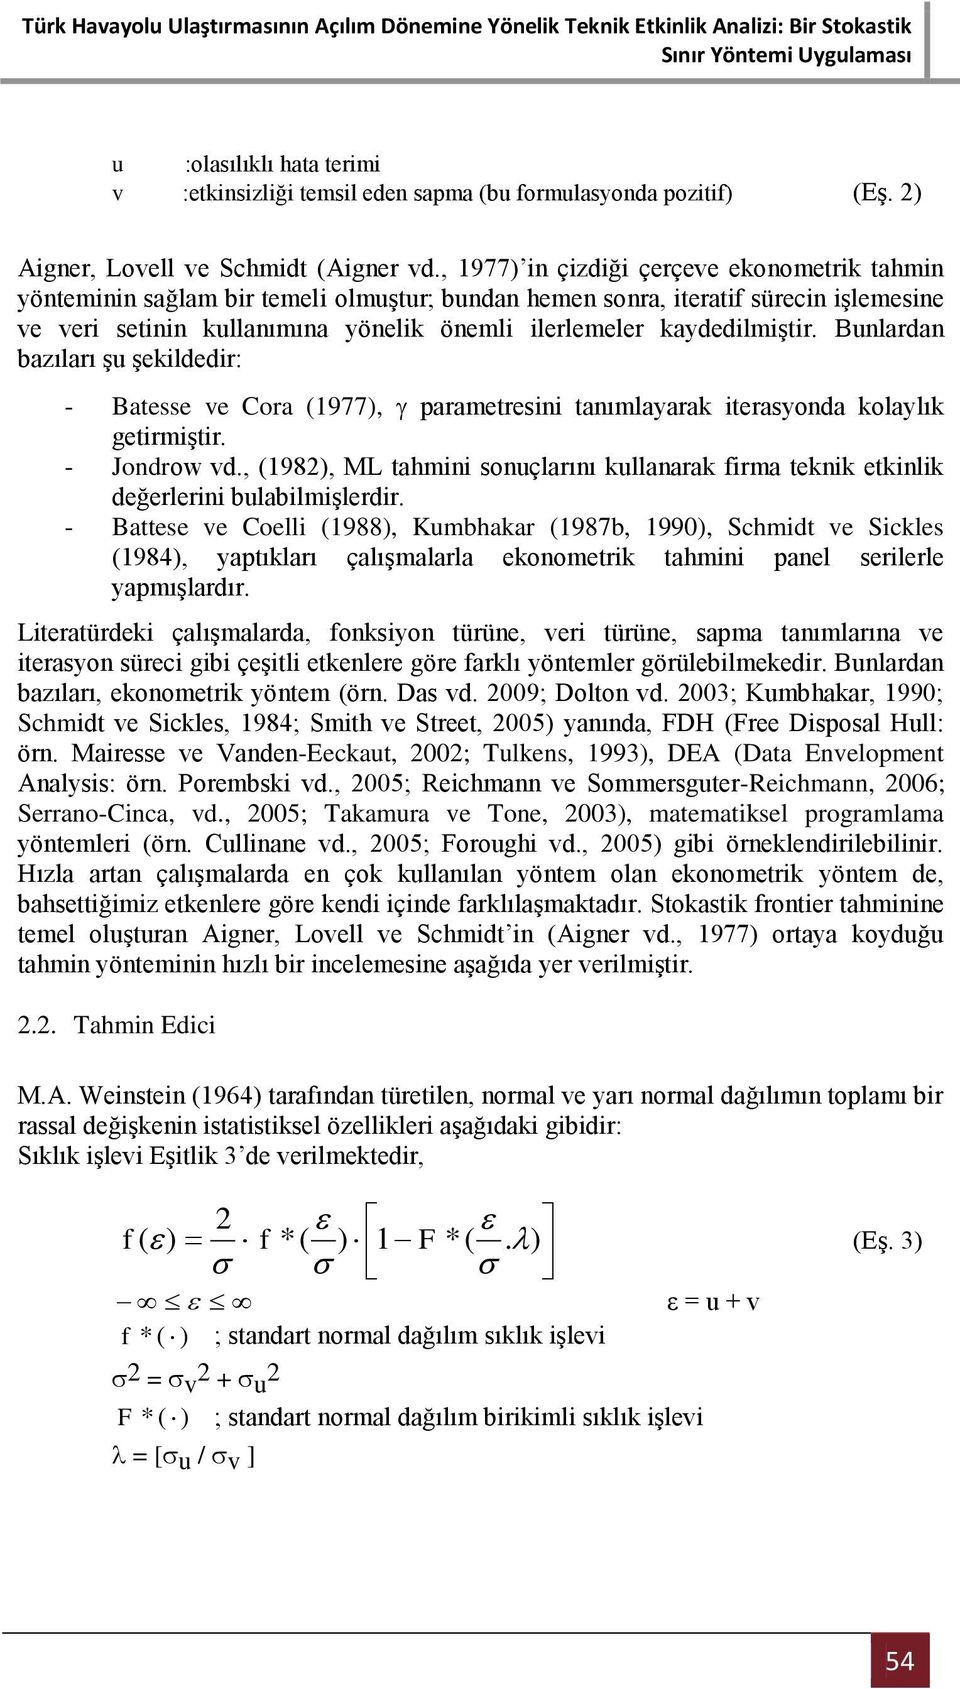 kaydedilmiştir. Bunlardan bazıları şu şekildedir: - Batesse ve Cora (1977), parametresini tanımlayarak iterasyonda kolaylık getirmiştir. - Jondrow vd.